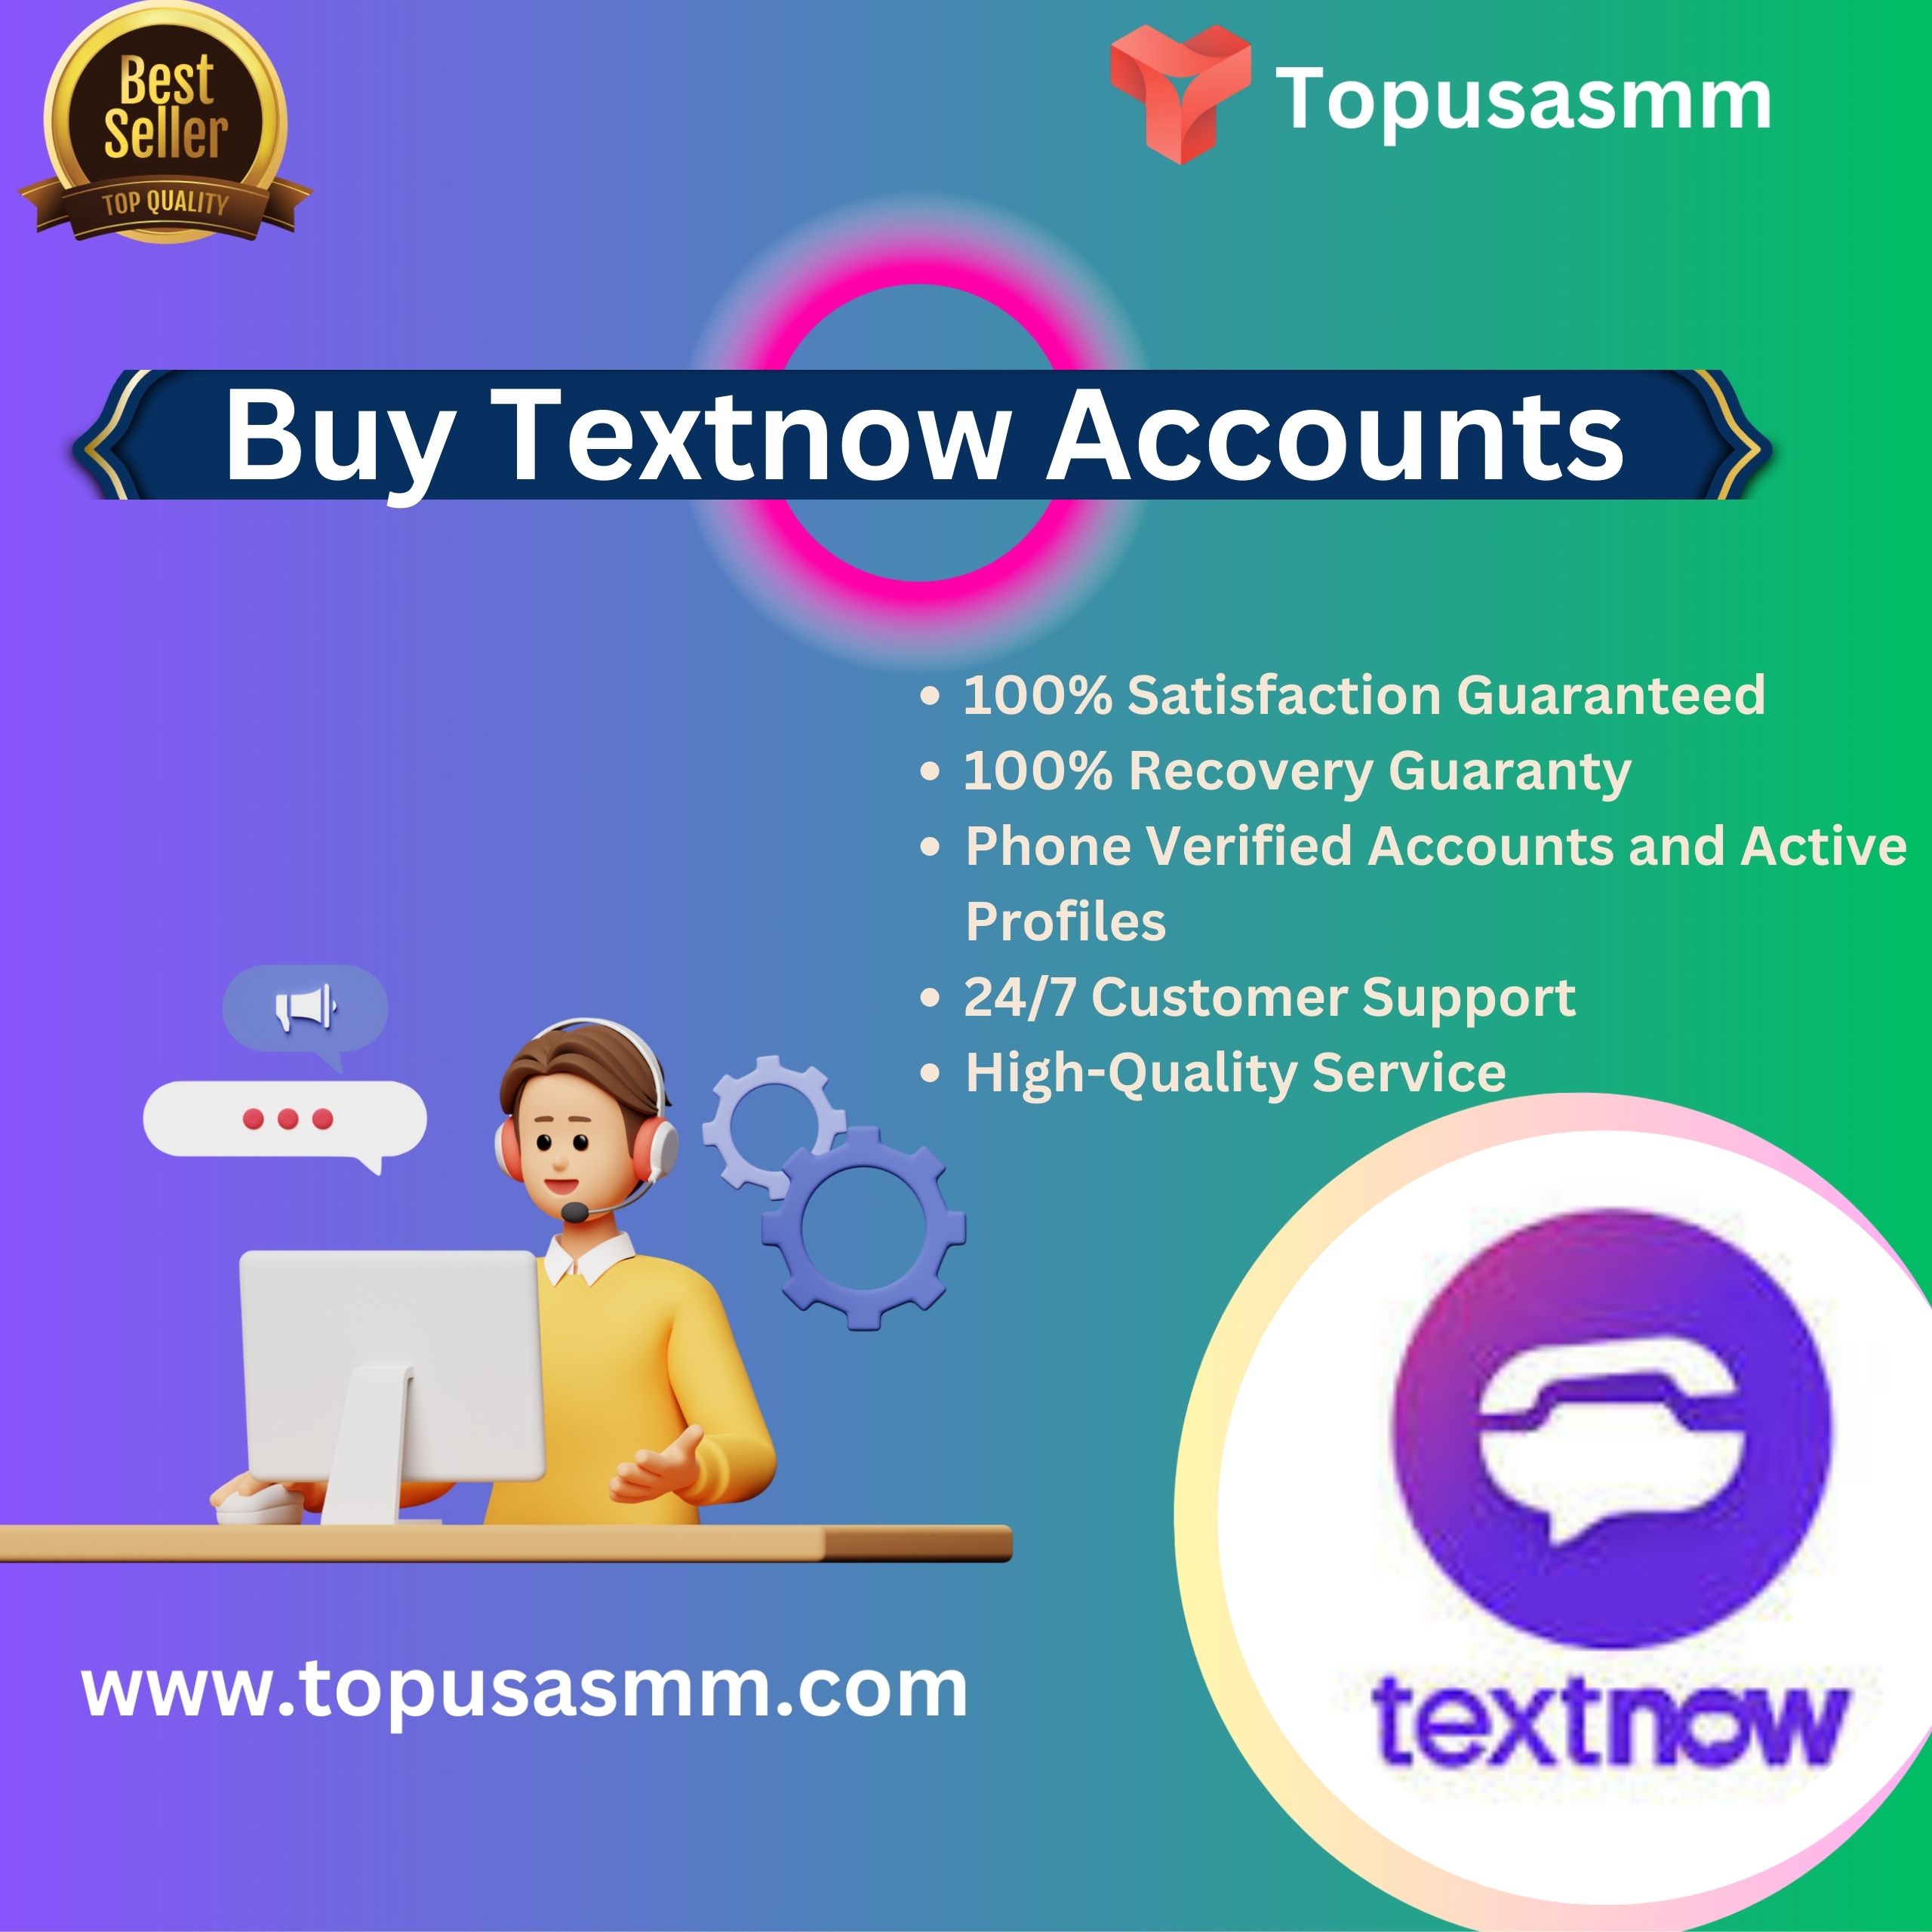 Buy TextNow Accounts -